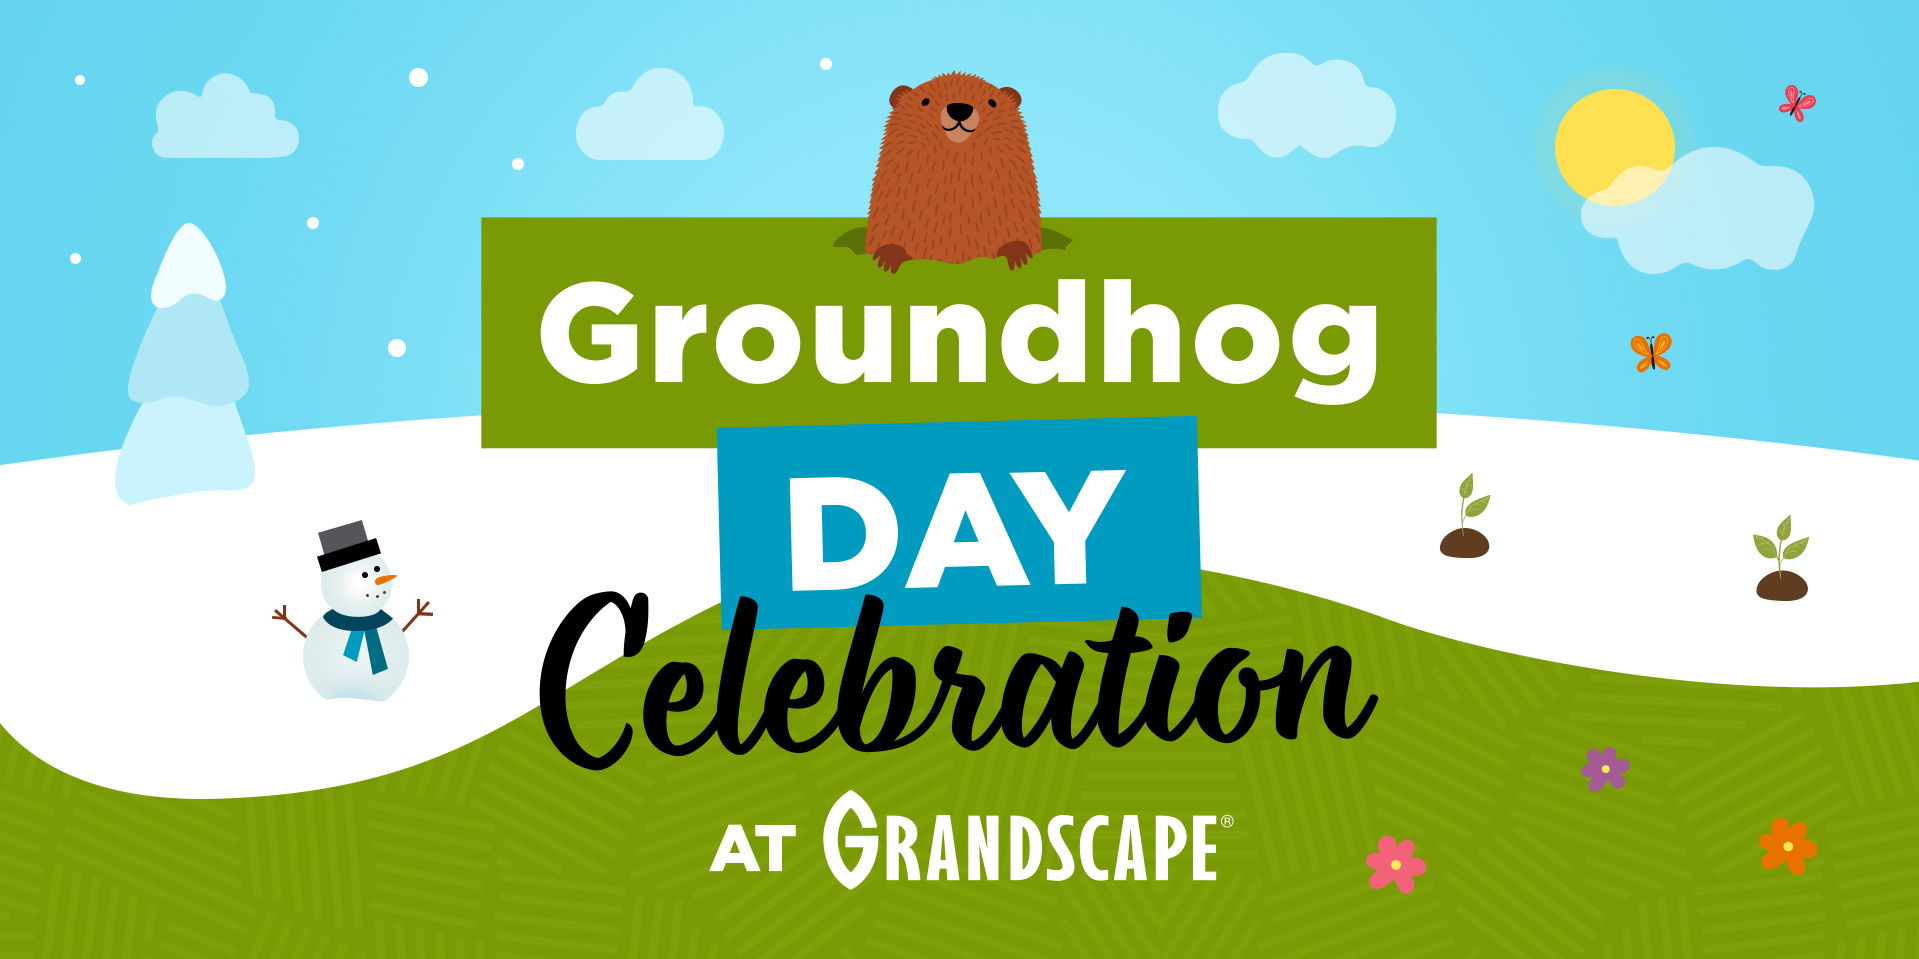 Groundhog Day Celebration promotional image